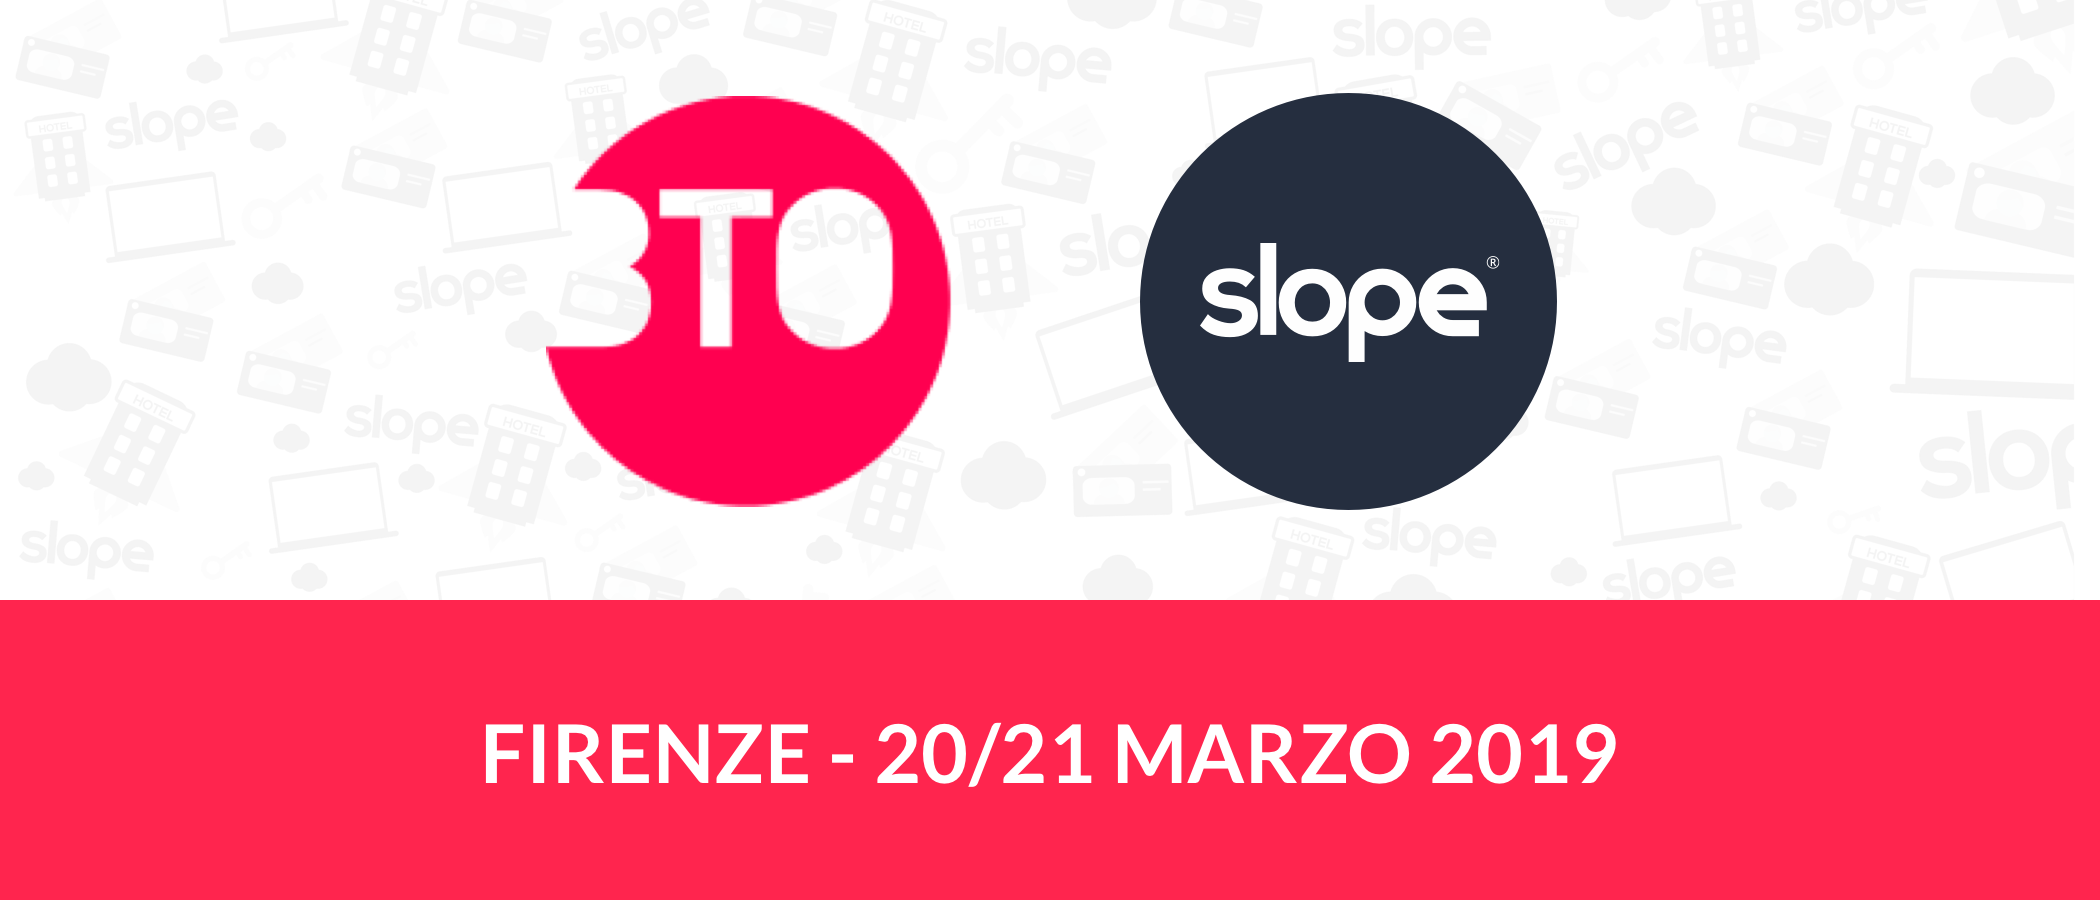 BTO Firenze 2019 Slope Gestionale Hotel